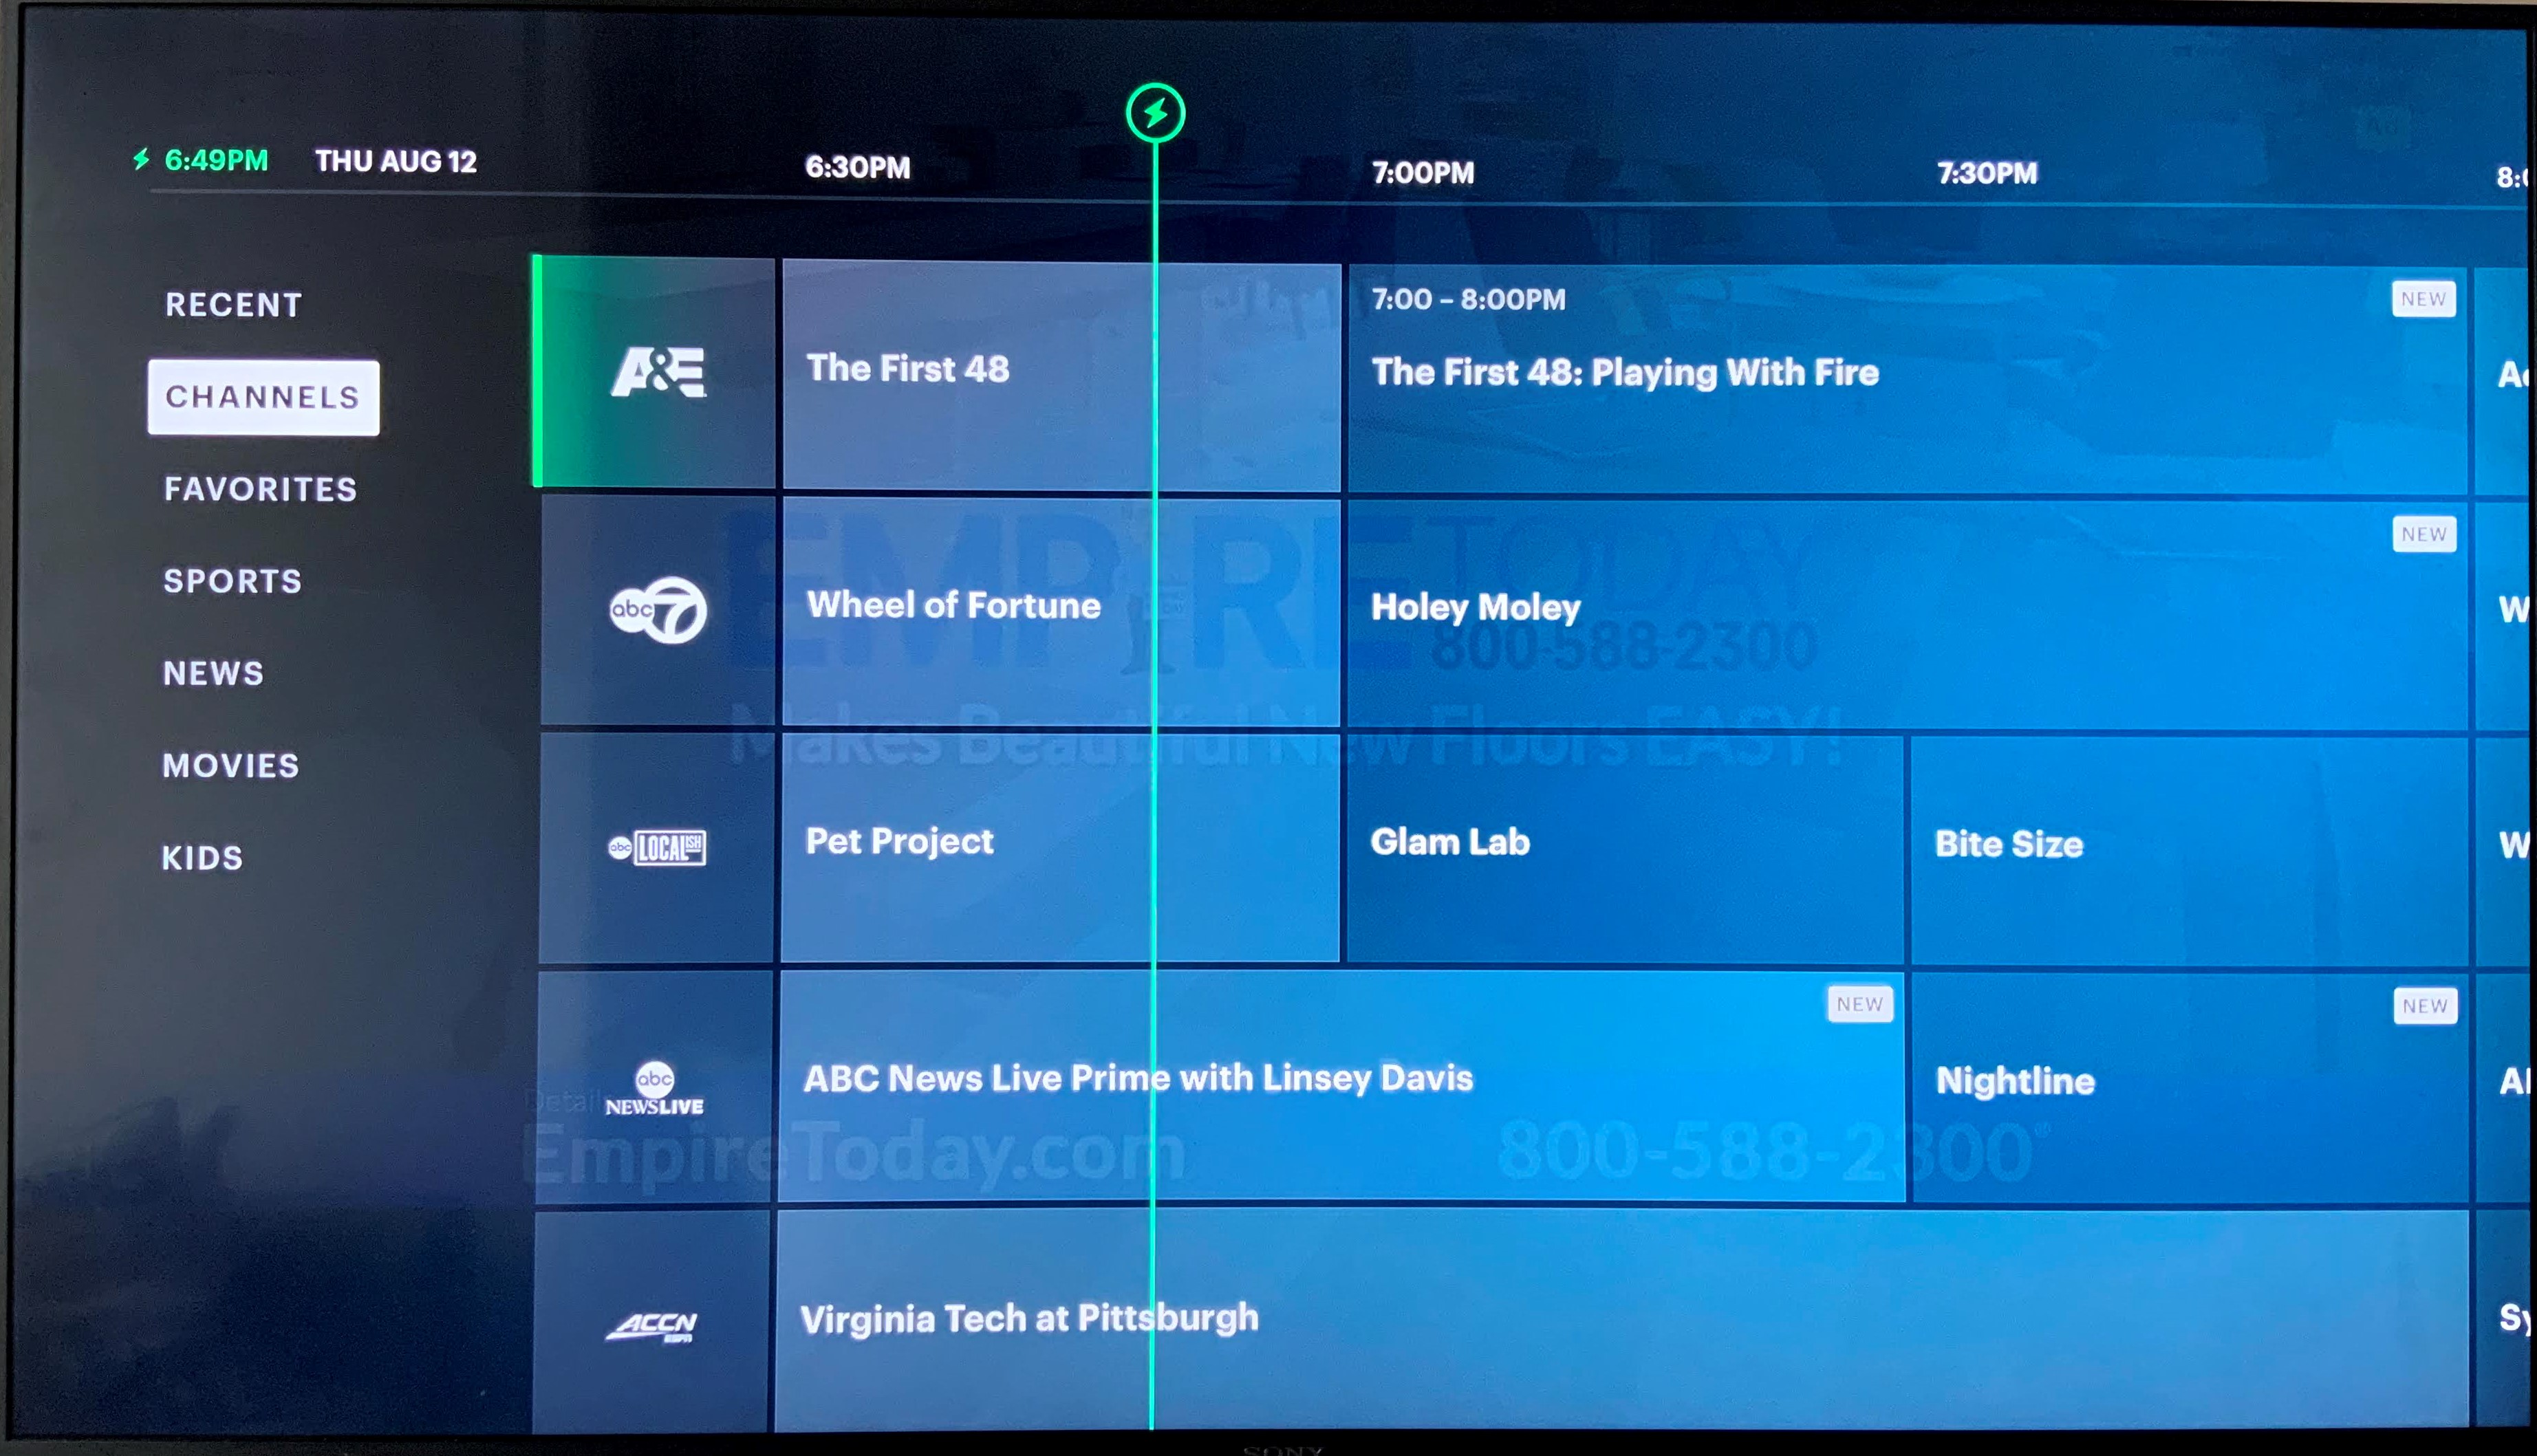 Hvordan får jeg live TV på Hulu på TV -en min?